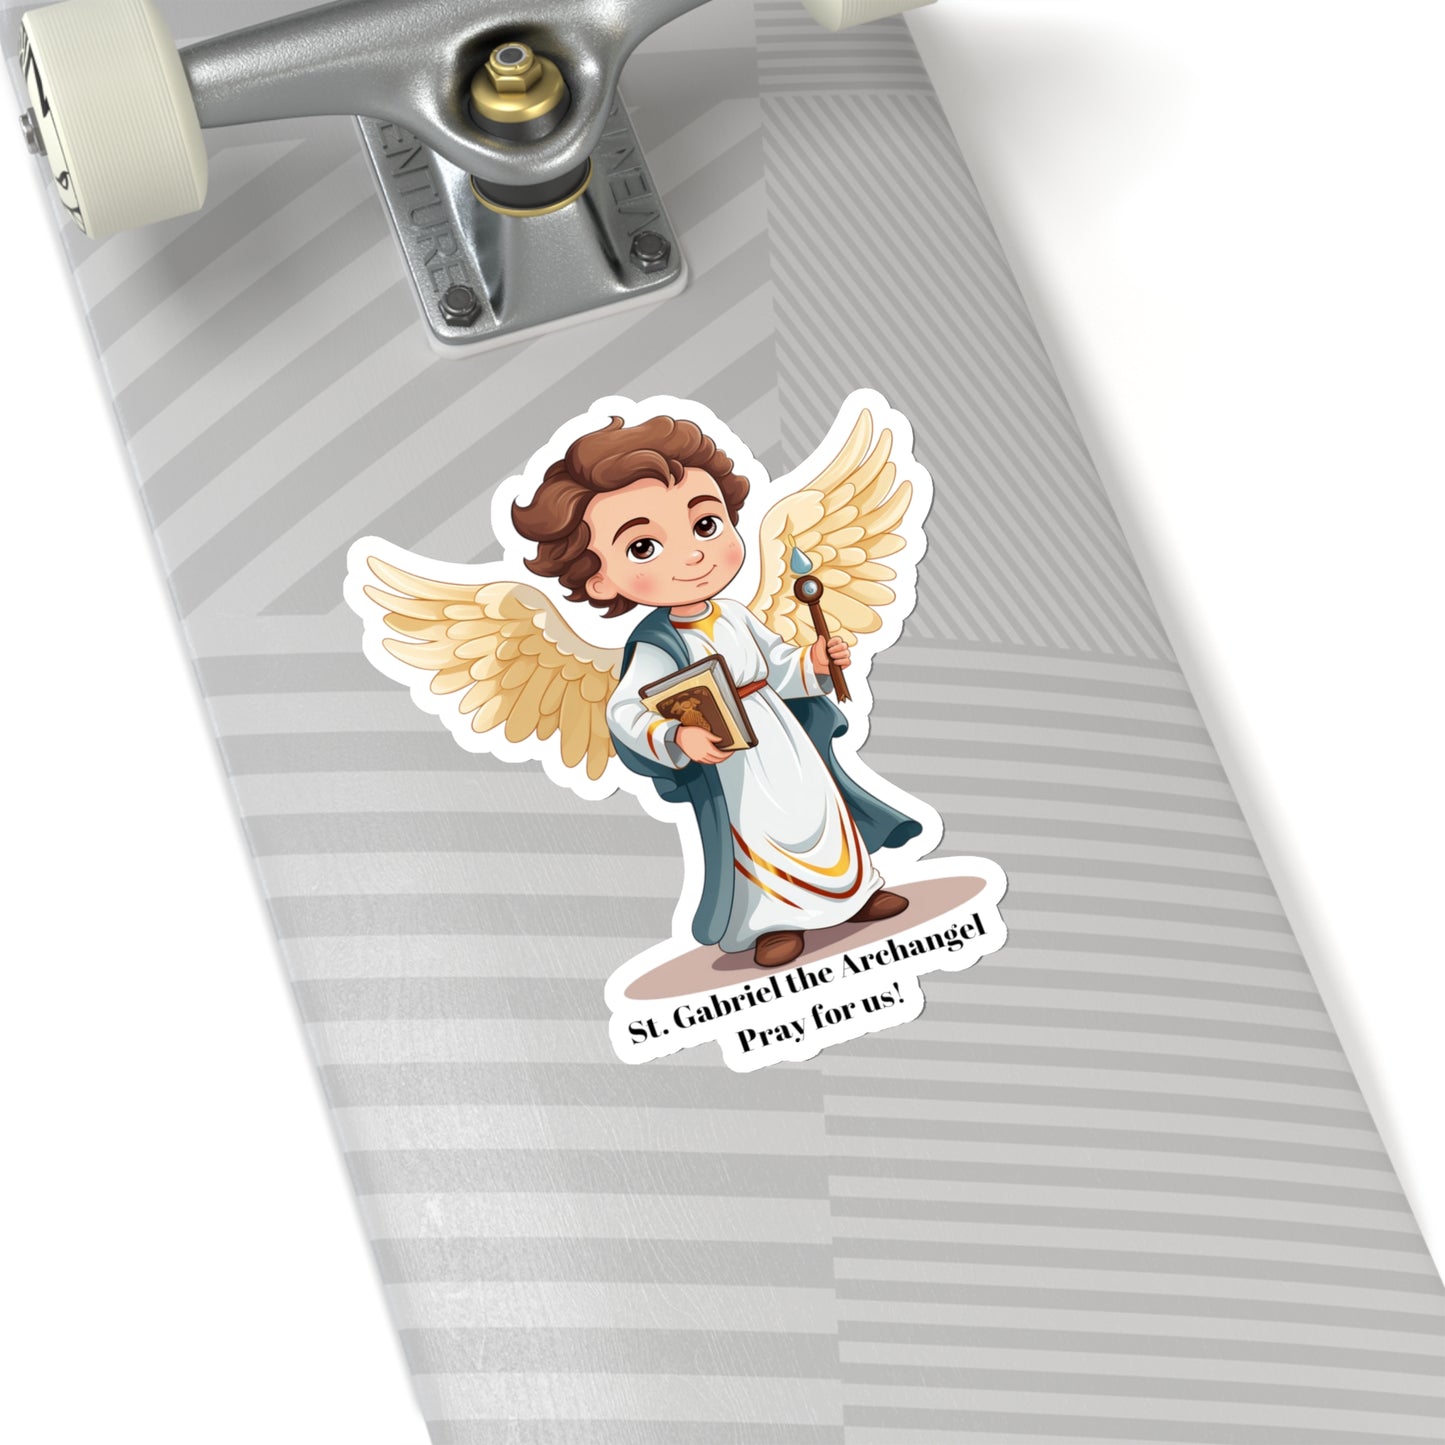 St. Gabriel the Archangel, Pray for Us Sticker